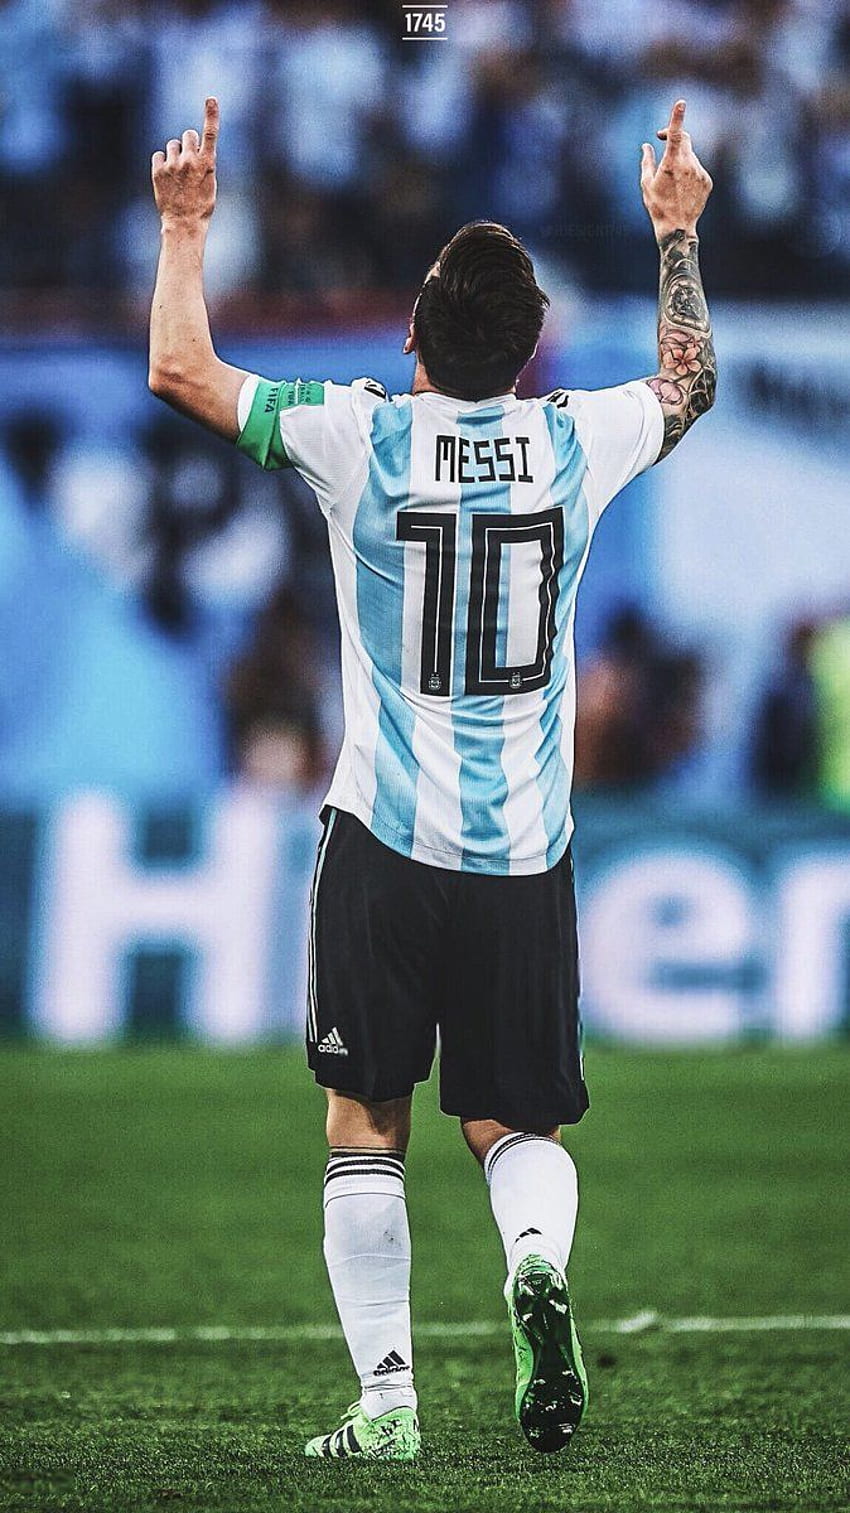 Chiêm ngưỡng chiếc áo đấu tuyển Argentina của siêu sao bóng đá Messi - một thiết kế độc đáo hòa quyện giữa tin vui và nỗi buồn của những trận đấu quốc tế. Được làm từ chất liệu cao cấp và thiết kế sang trọng, chiếc áo đấu này sẽ khiến bạn cảm thấy tự hào khi mặc.